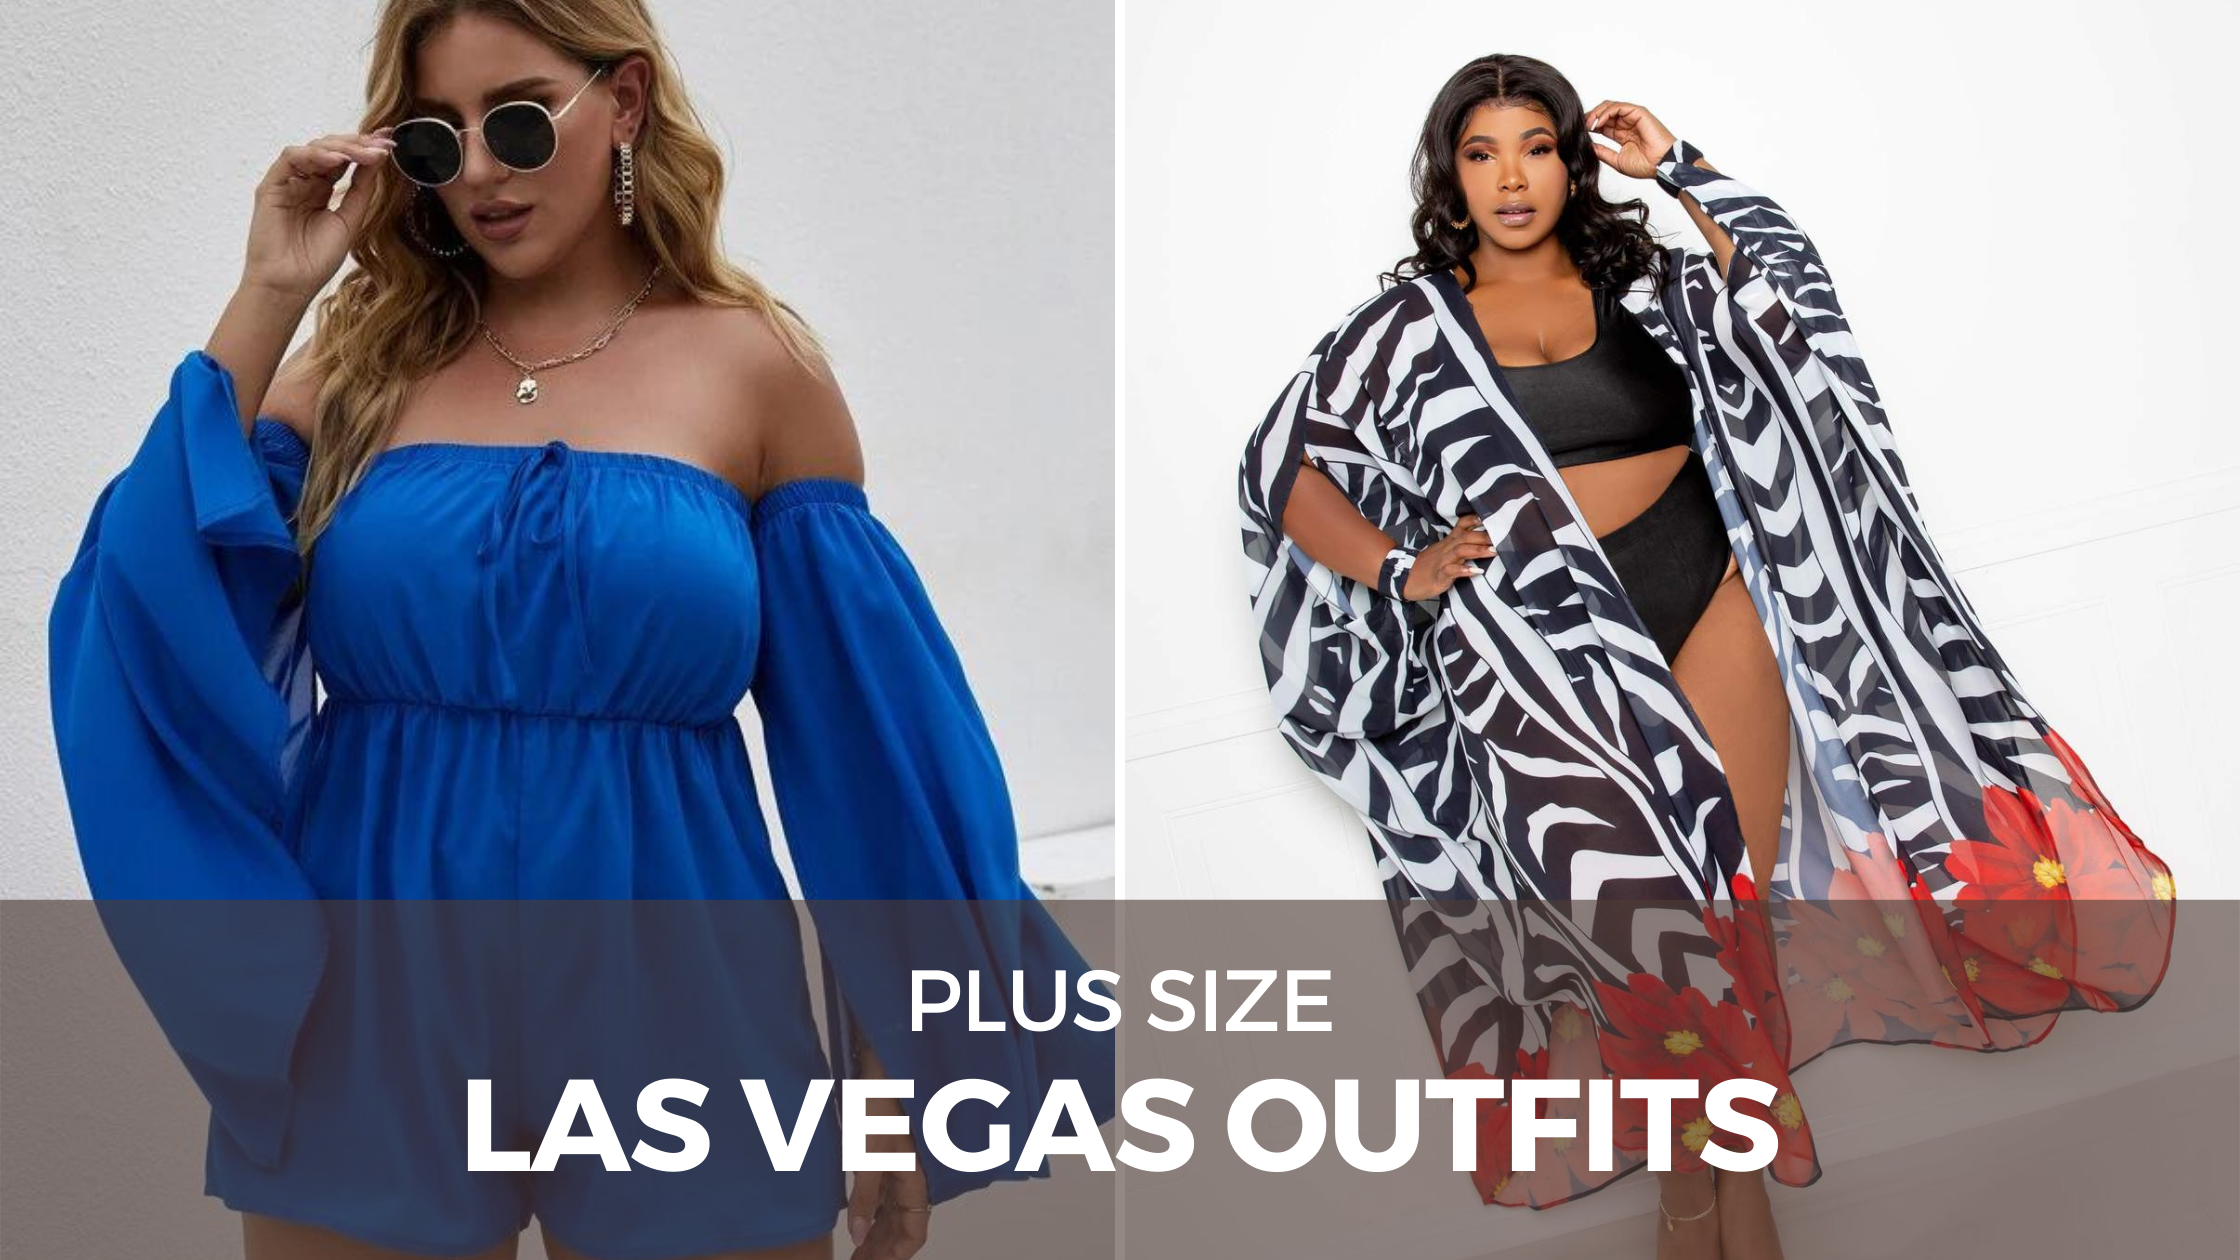 14+ Plus Size Outfits for Las Vegas - The Huntswoman